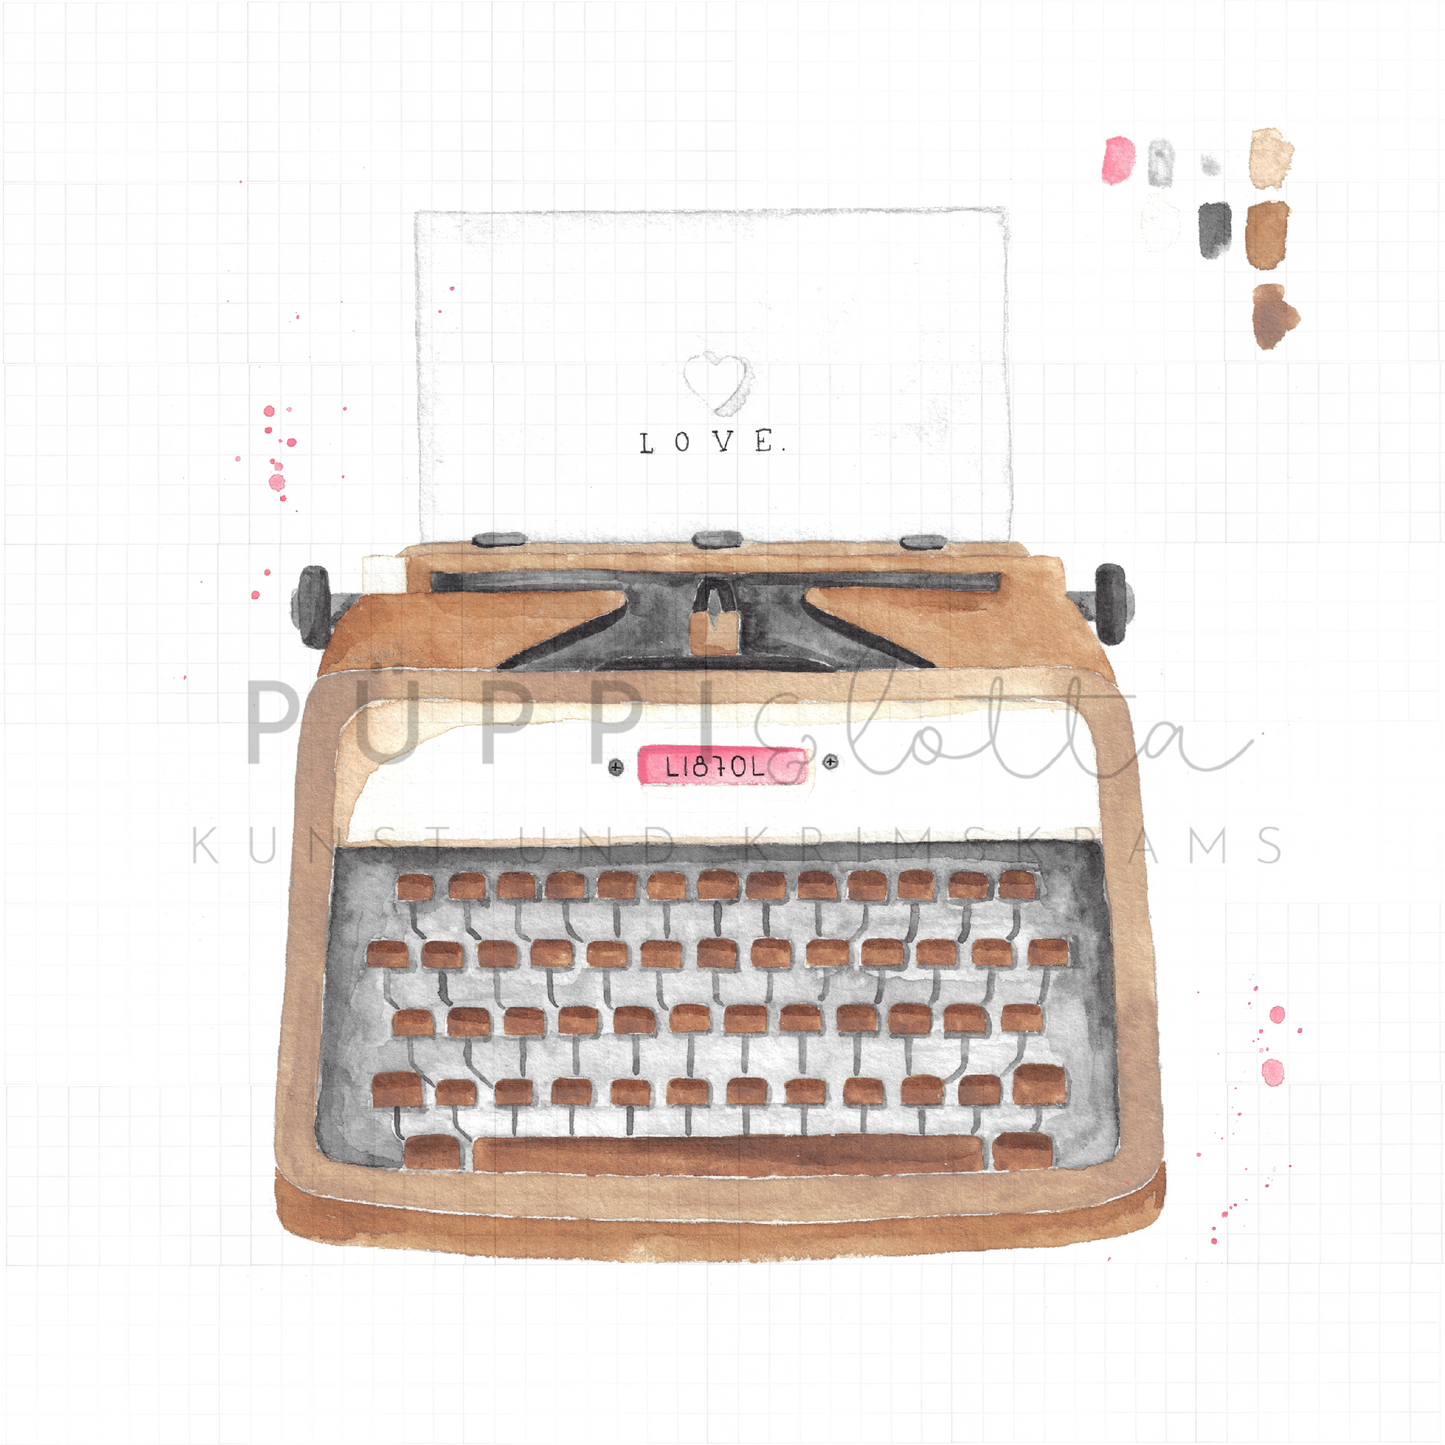 Schreibmaschine "LOVE."